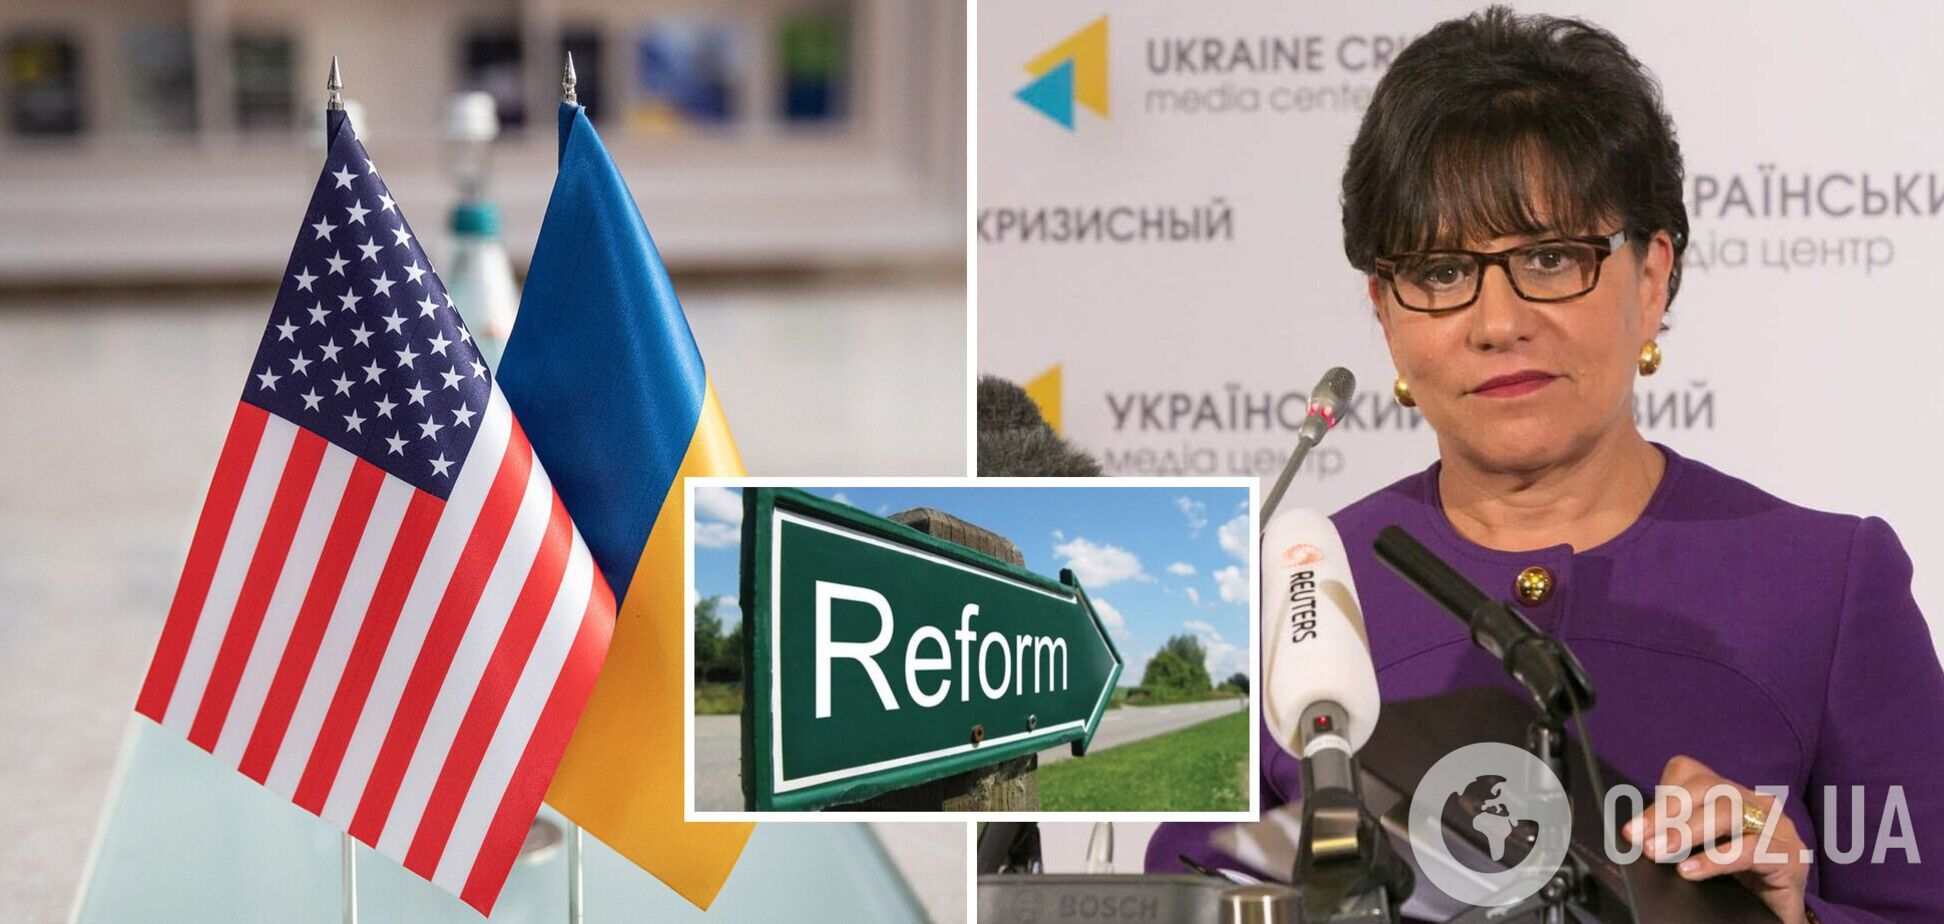 Американские компании хотят инвестировать в Украину, но нужны реформы, – спецпредставитель США Прицкер